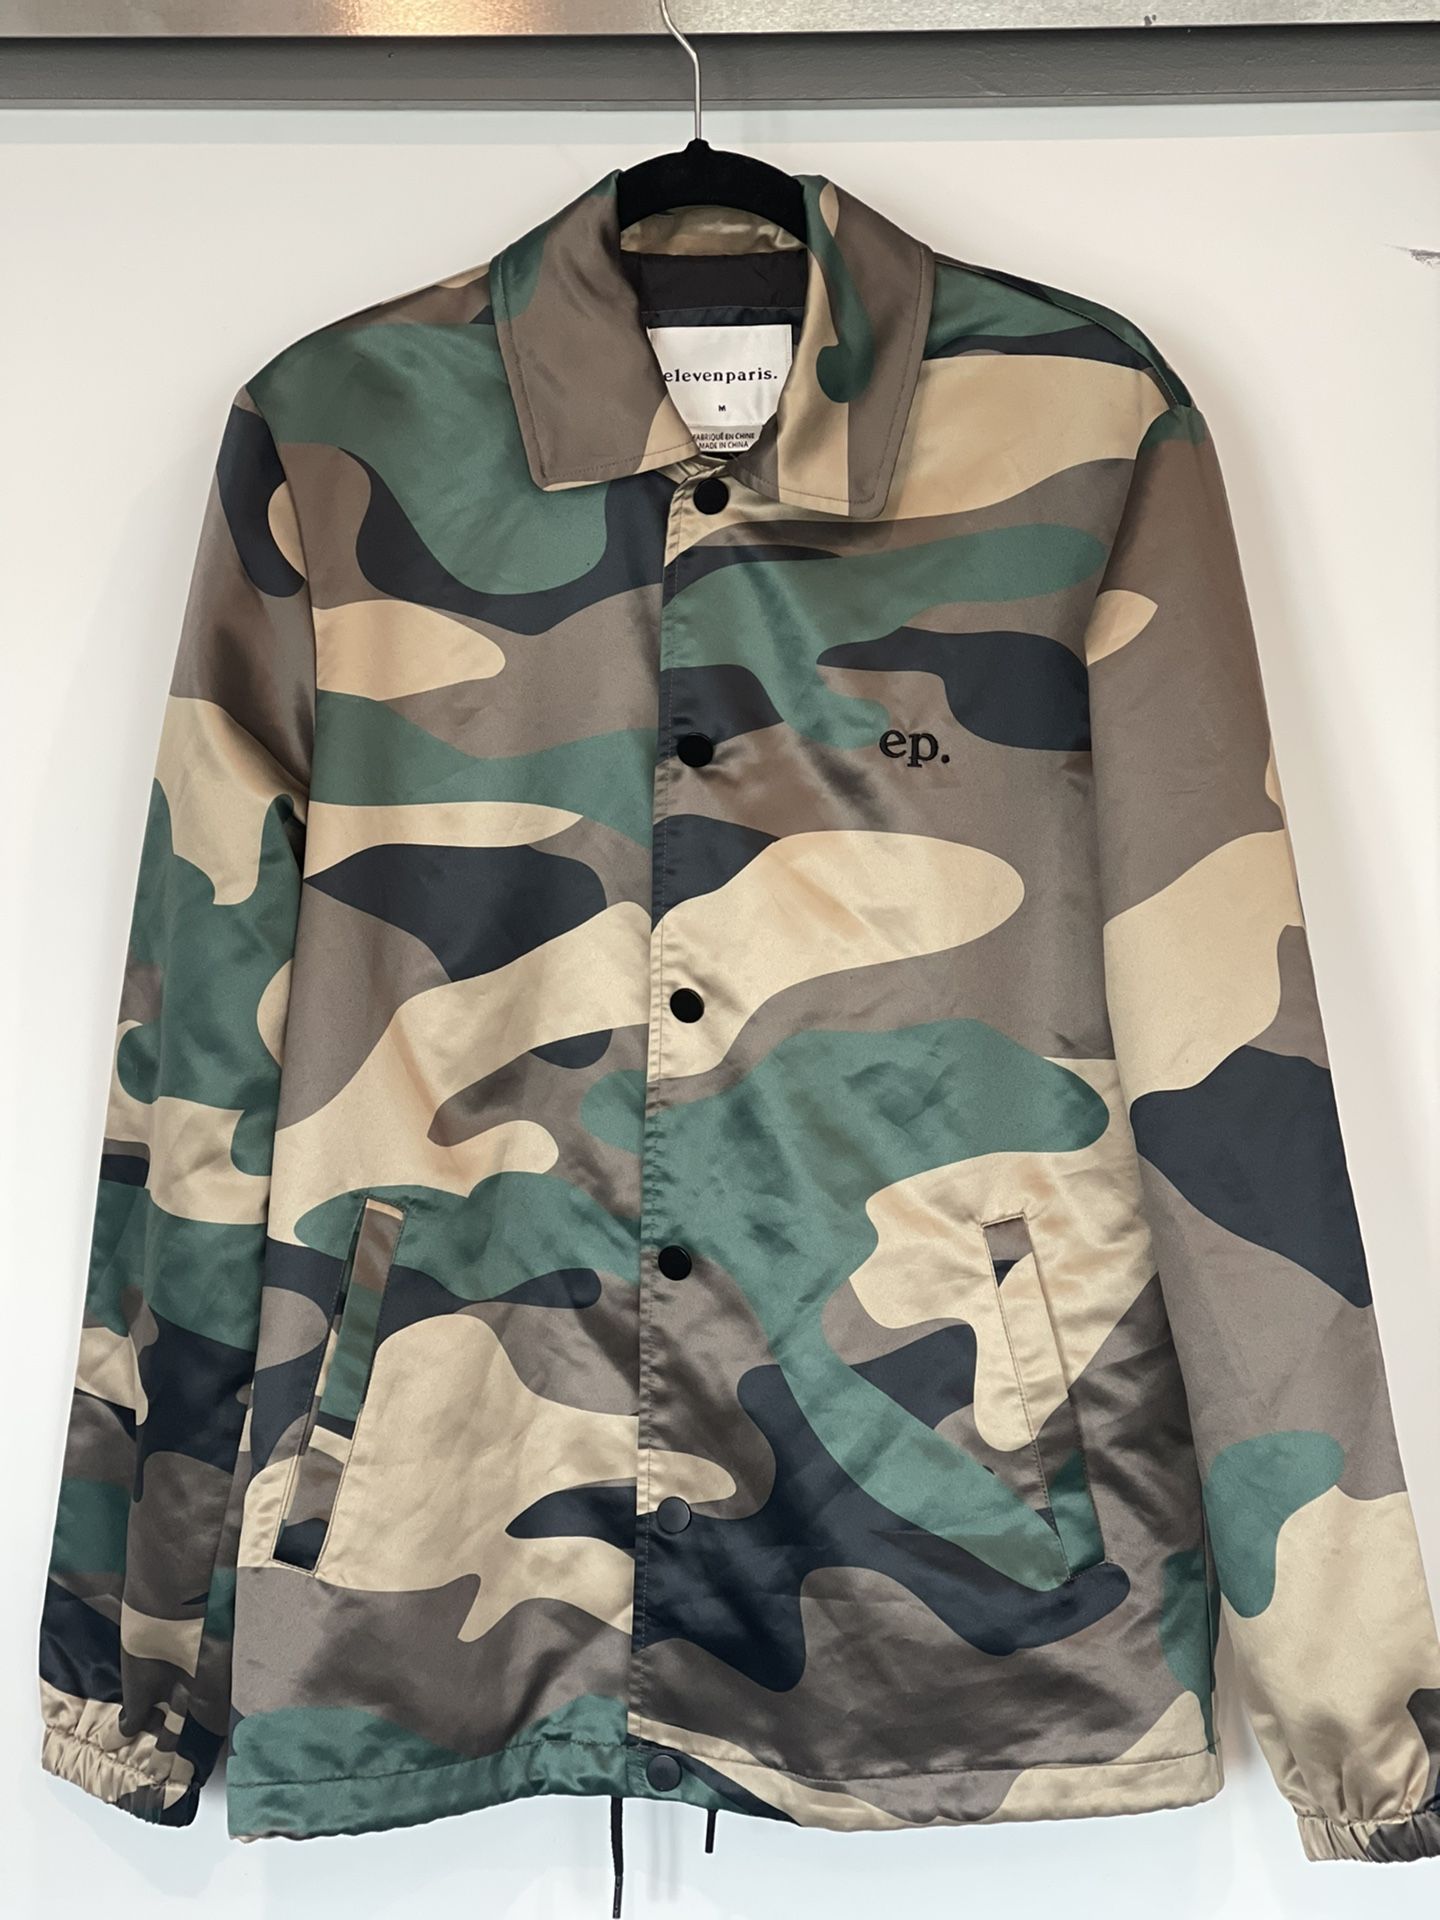 Elevenparis Army Fatigues Jacket 